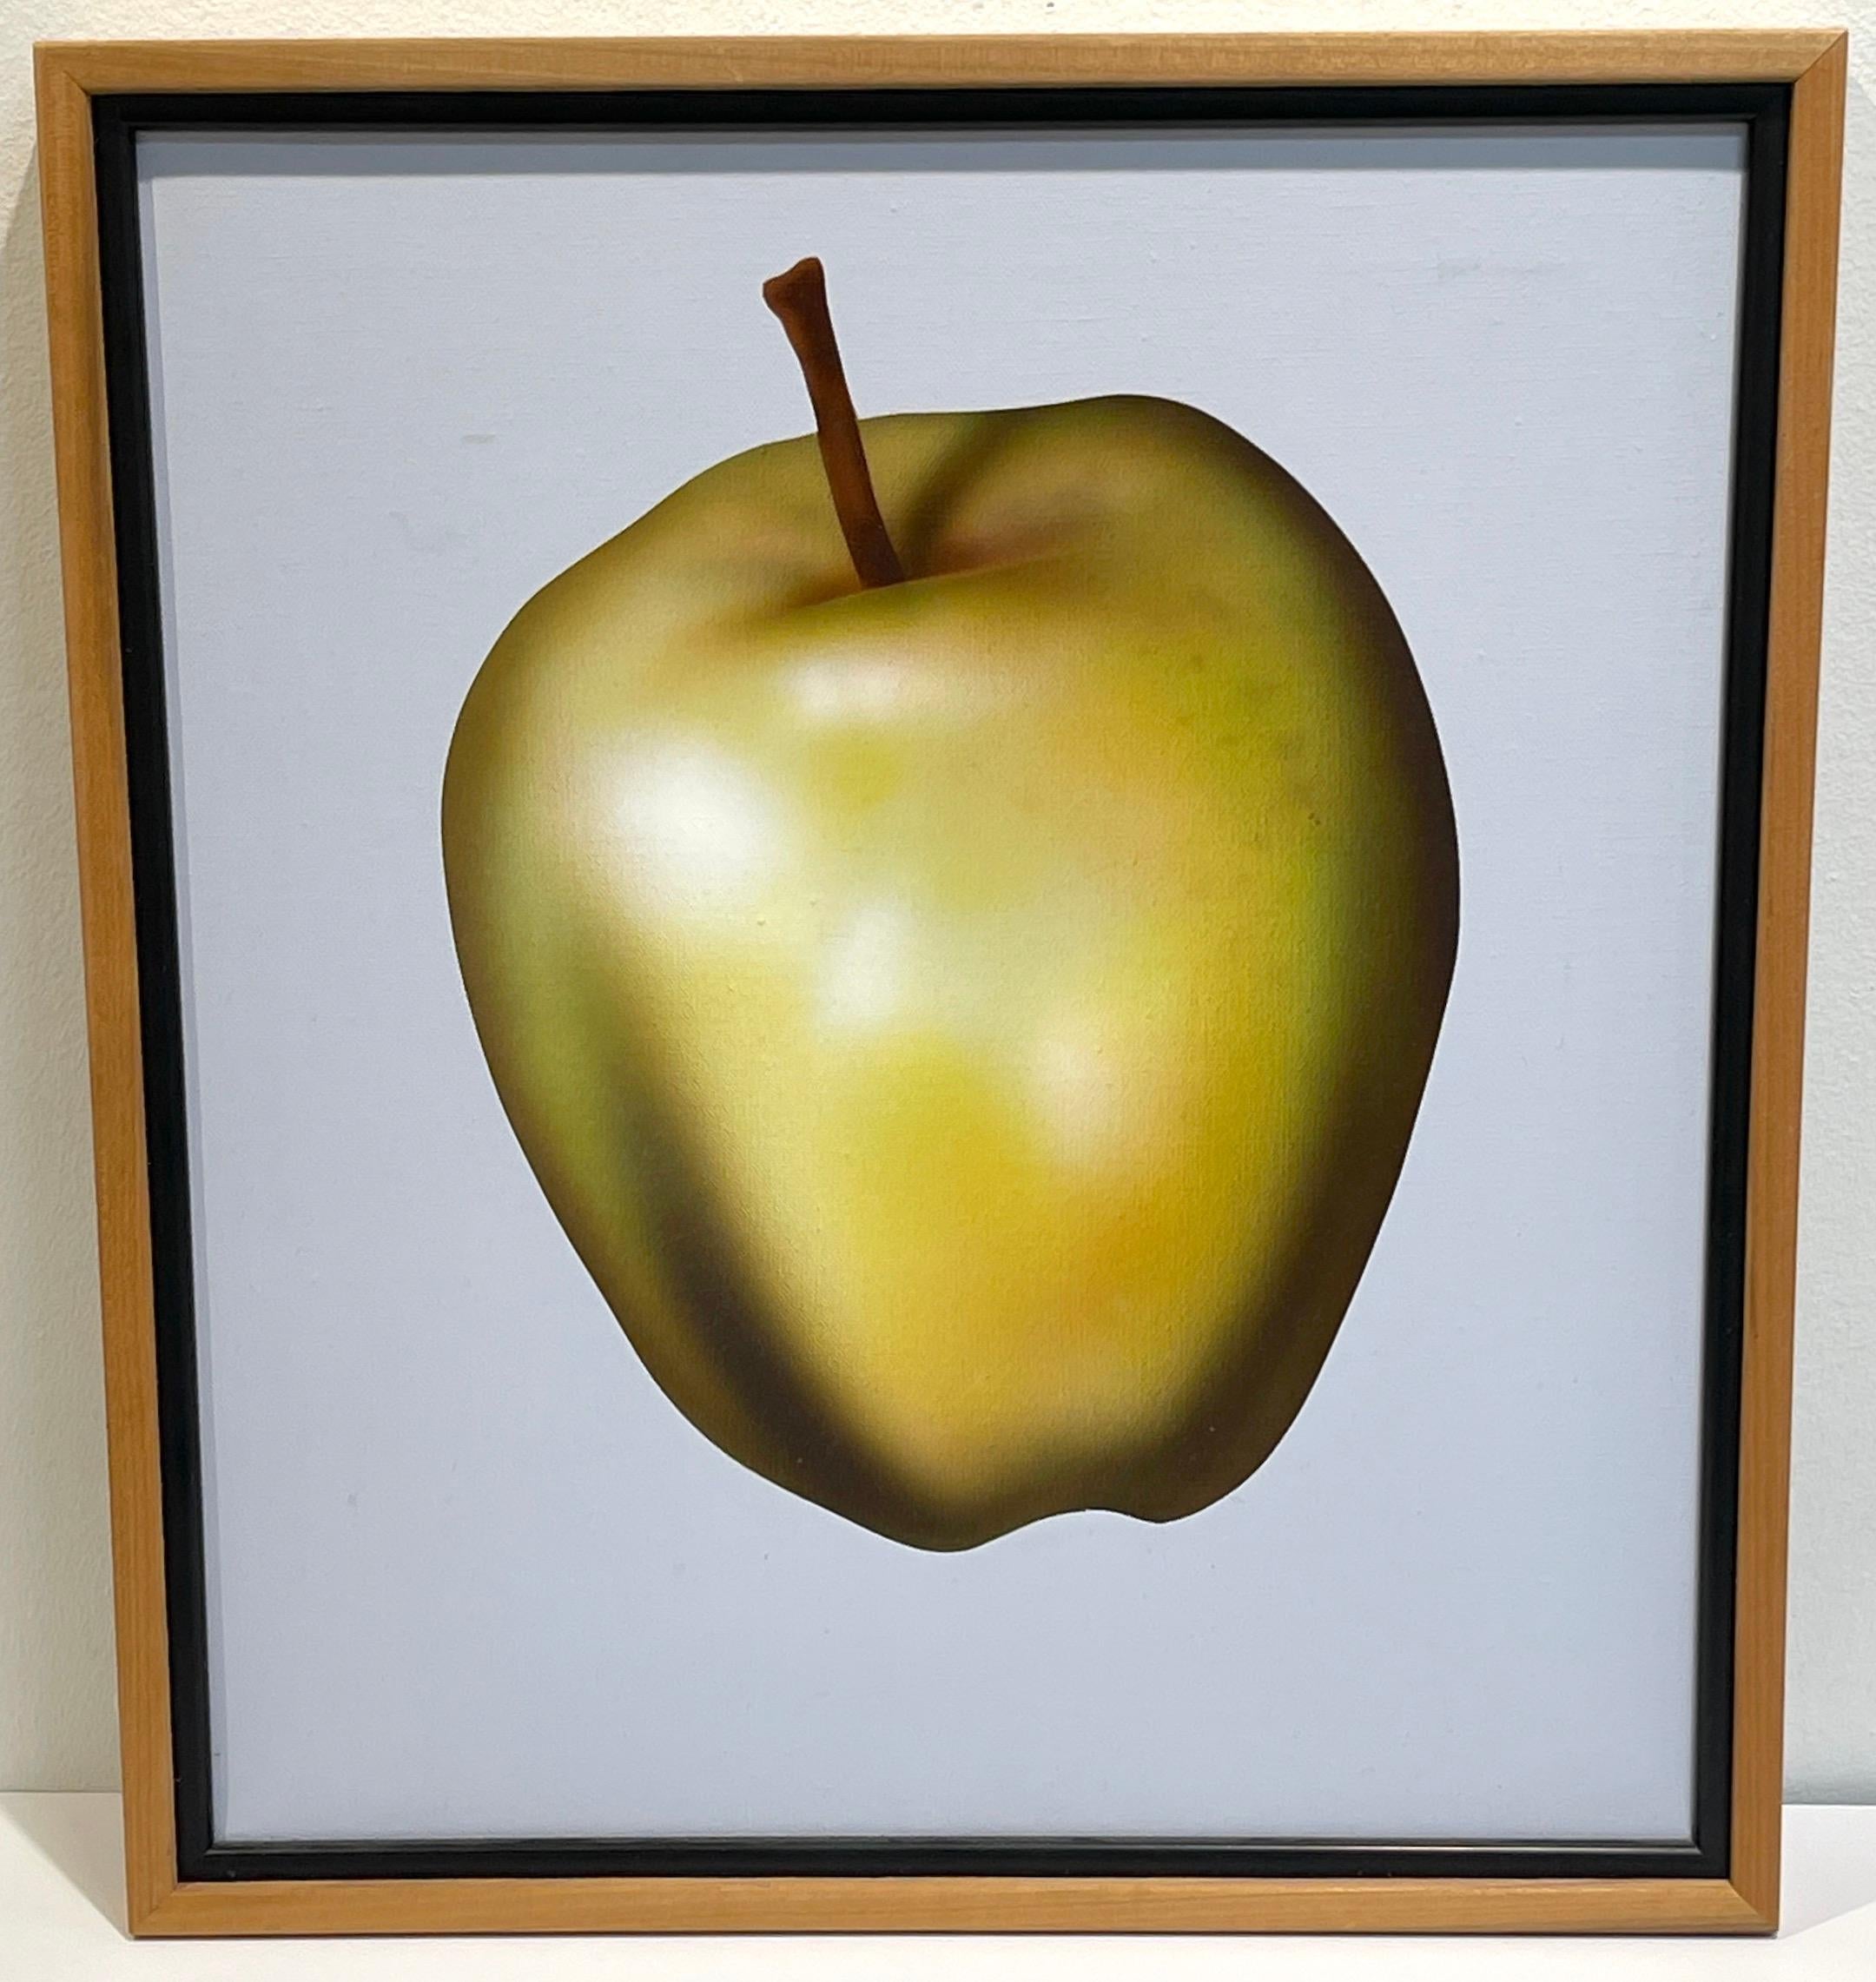 Clarence Measelle (américain, né en 1947) Green Apple, 1983
Acrylique sur toile, signée au verso
Toile 16 x 16 pouces, encadré 17.5 x 17.5 pouces 

Plongez dans l'attrait captivant de cette œuvre exquise de Clarence Measelle, exécutée en 1983. Cette